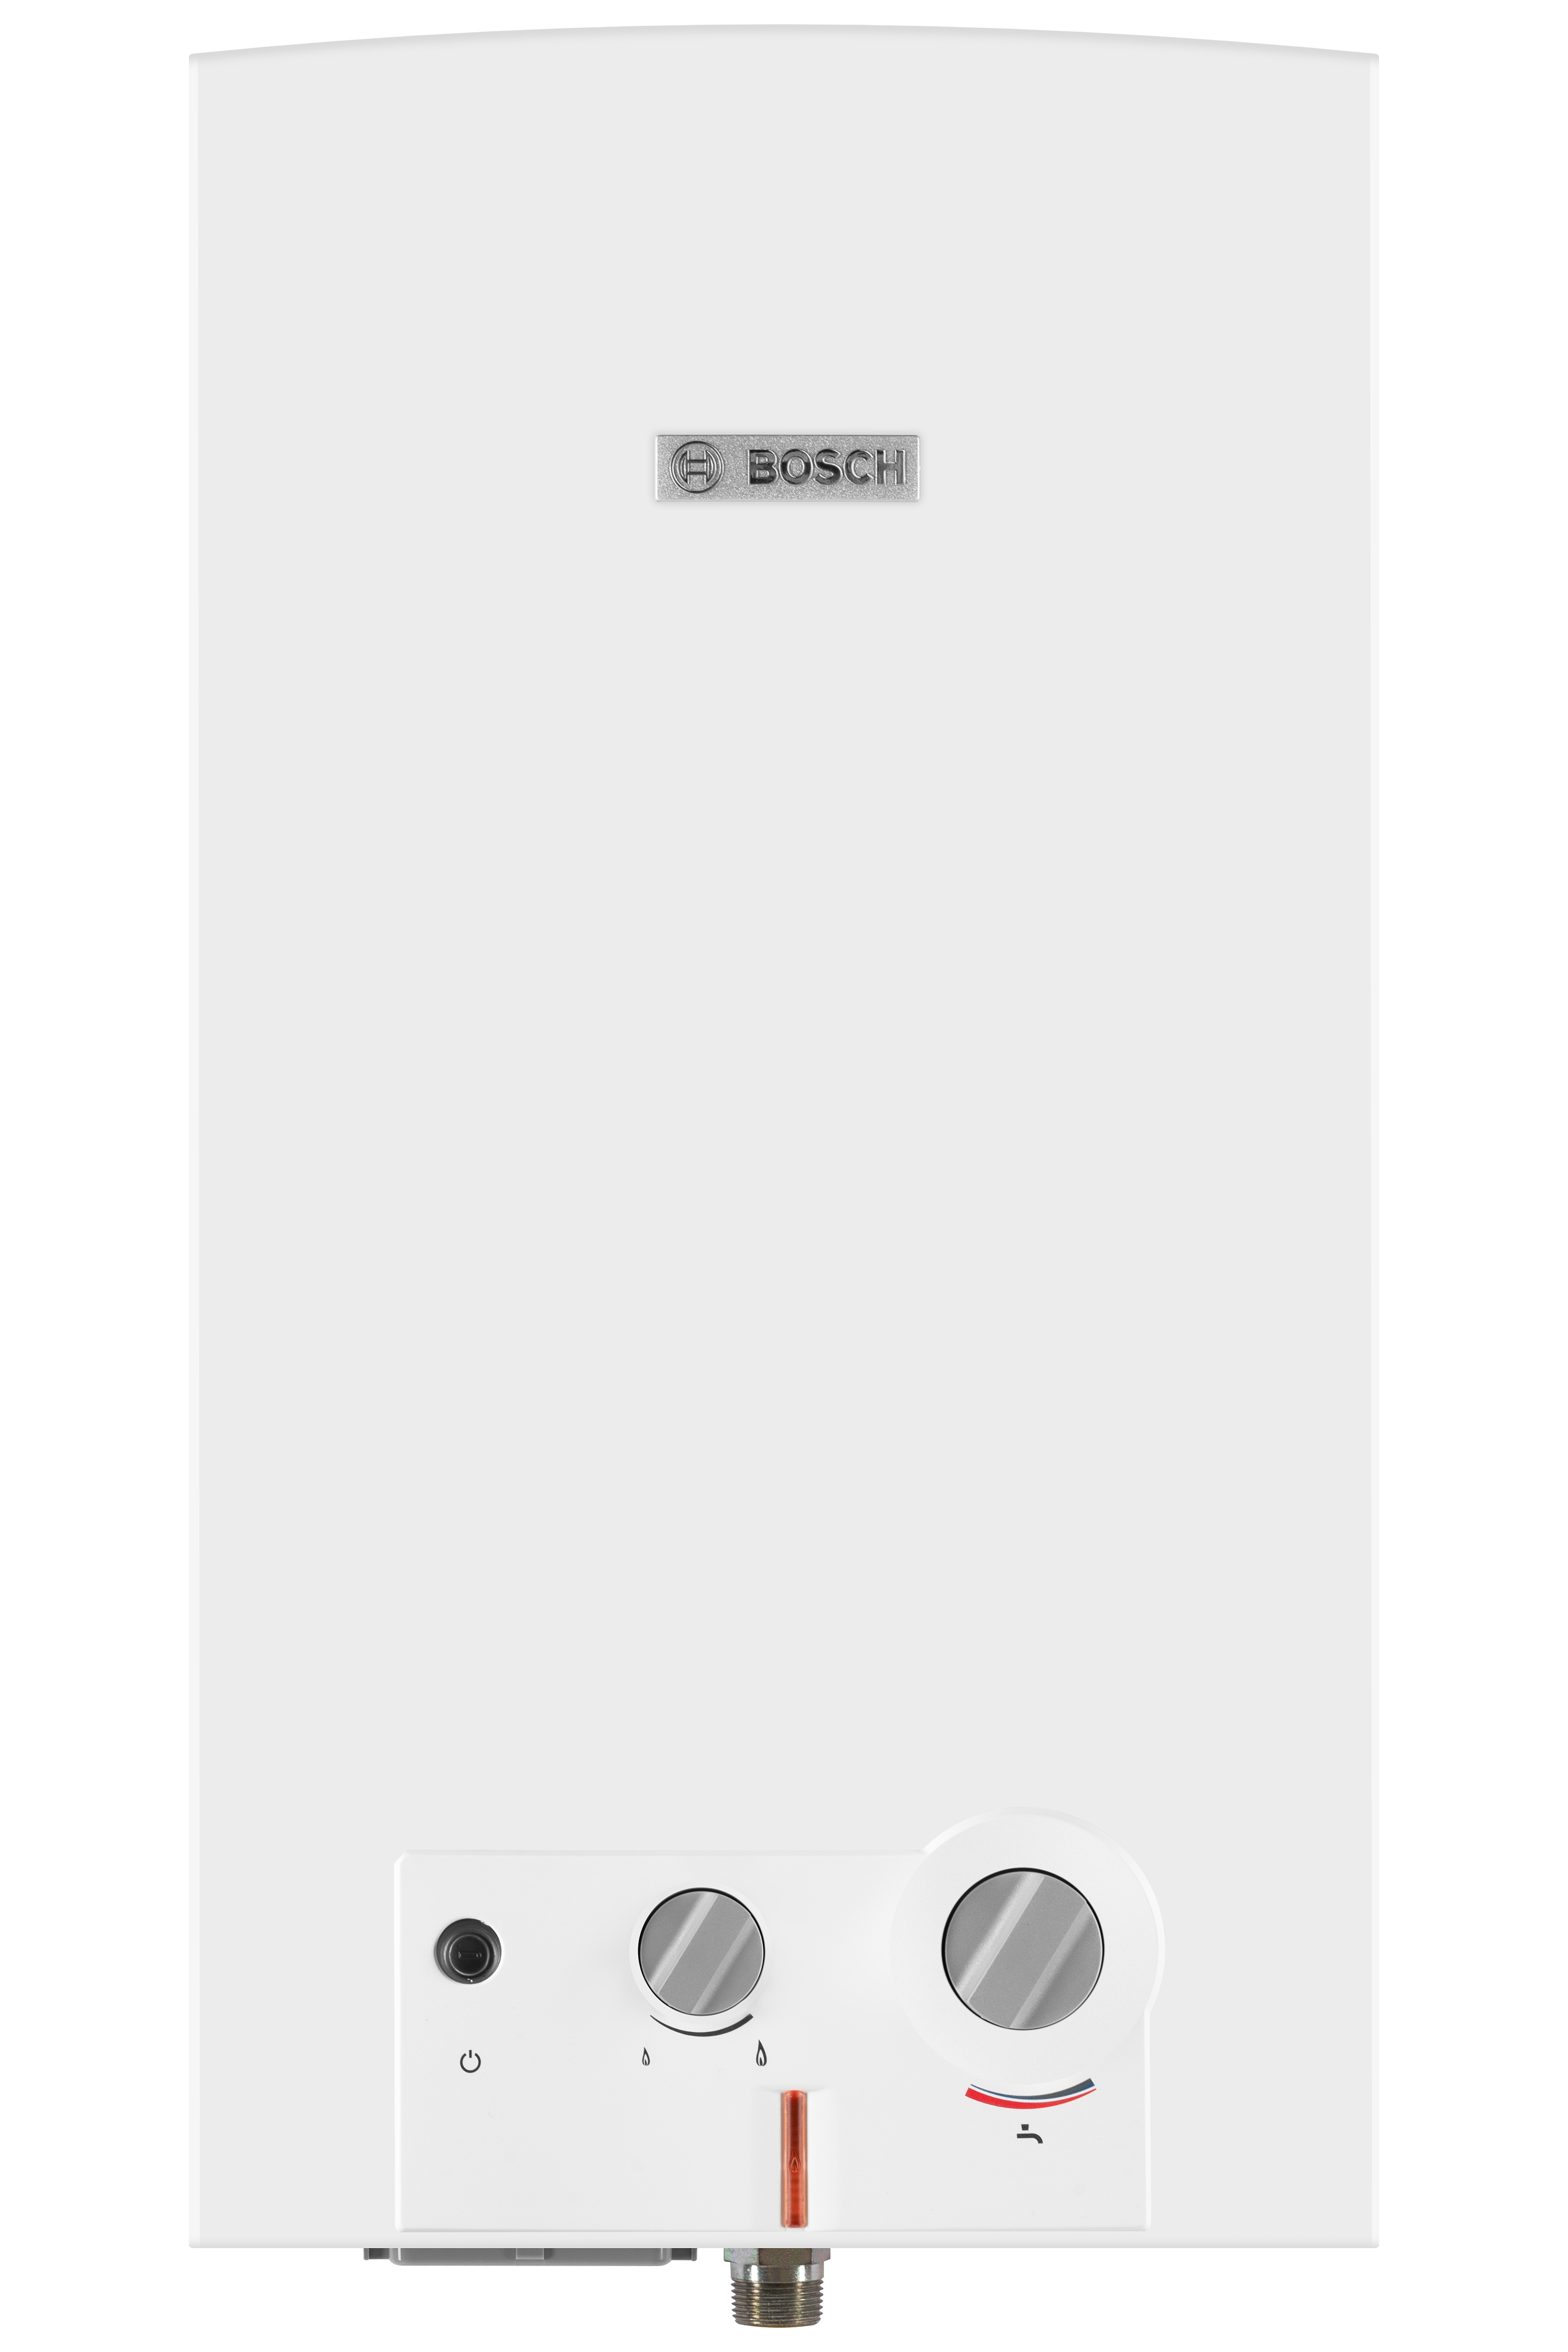 Bosch Therm 4000 O WR 10-2 B (7701331617)